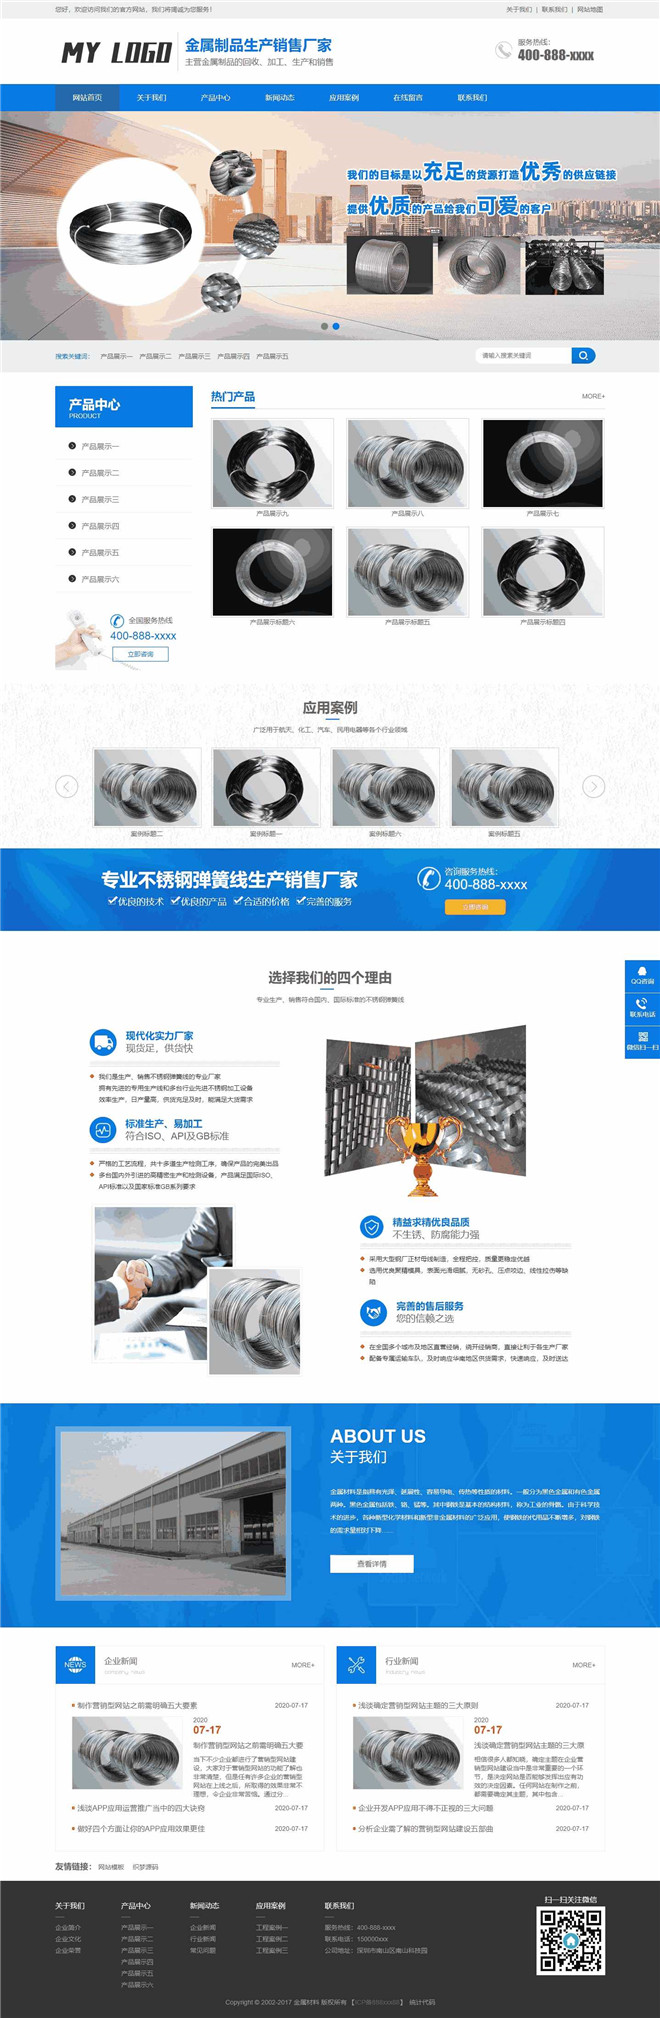 营销型金属材料加工生产销售网站模板截图